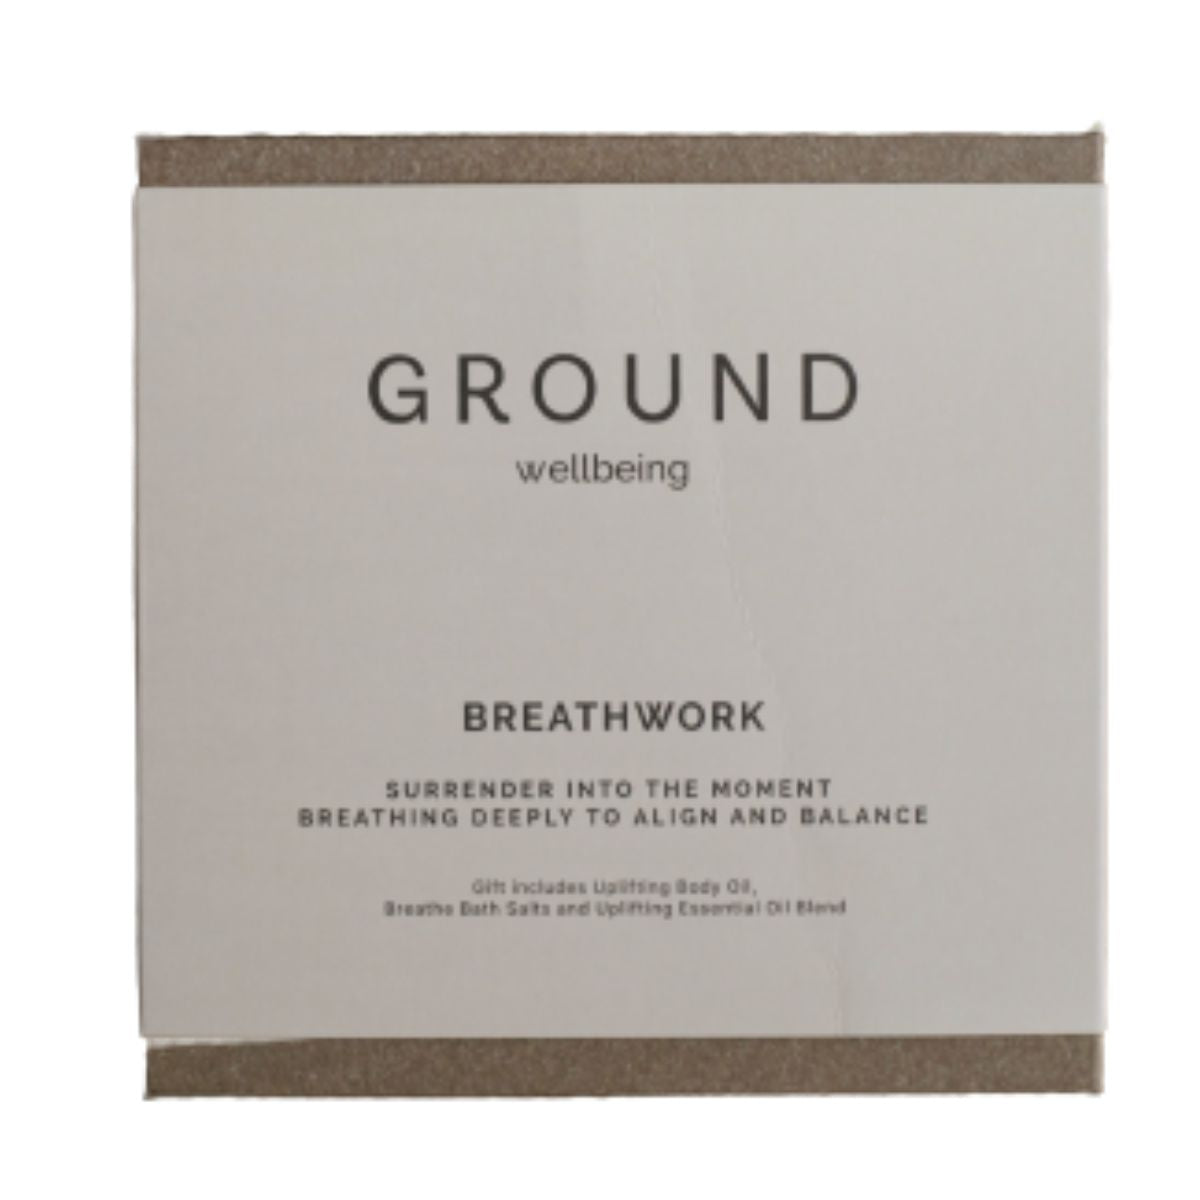 GROUND Breathwork Gift Box.